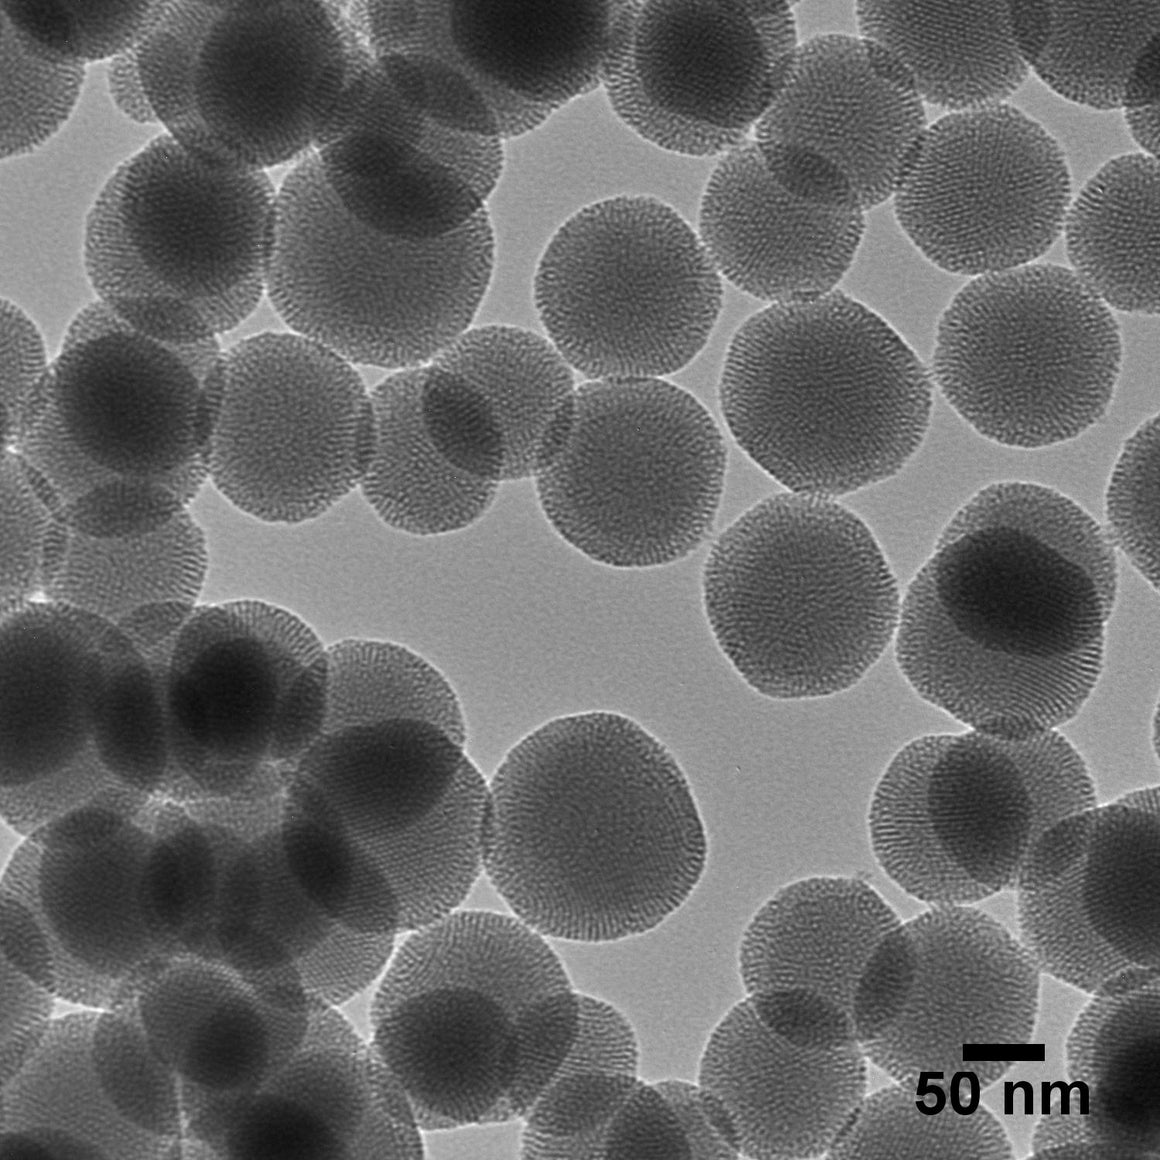 NanoXact Mesoporous Silica Nanospheres – Aminated